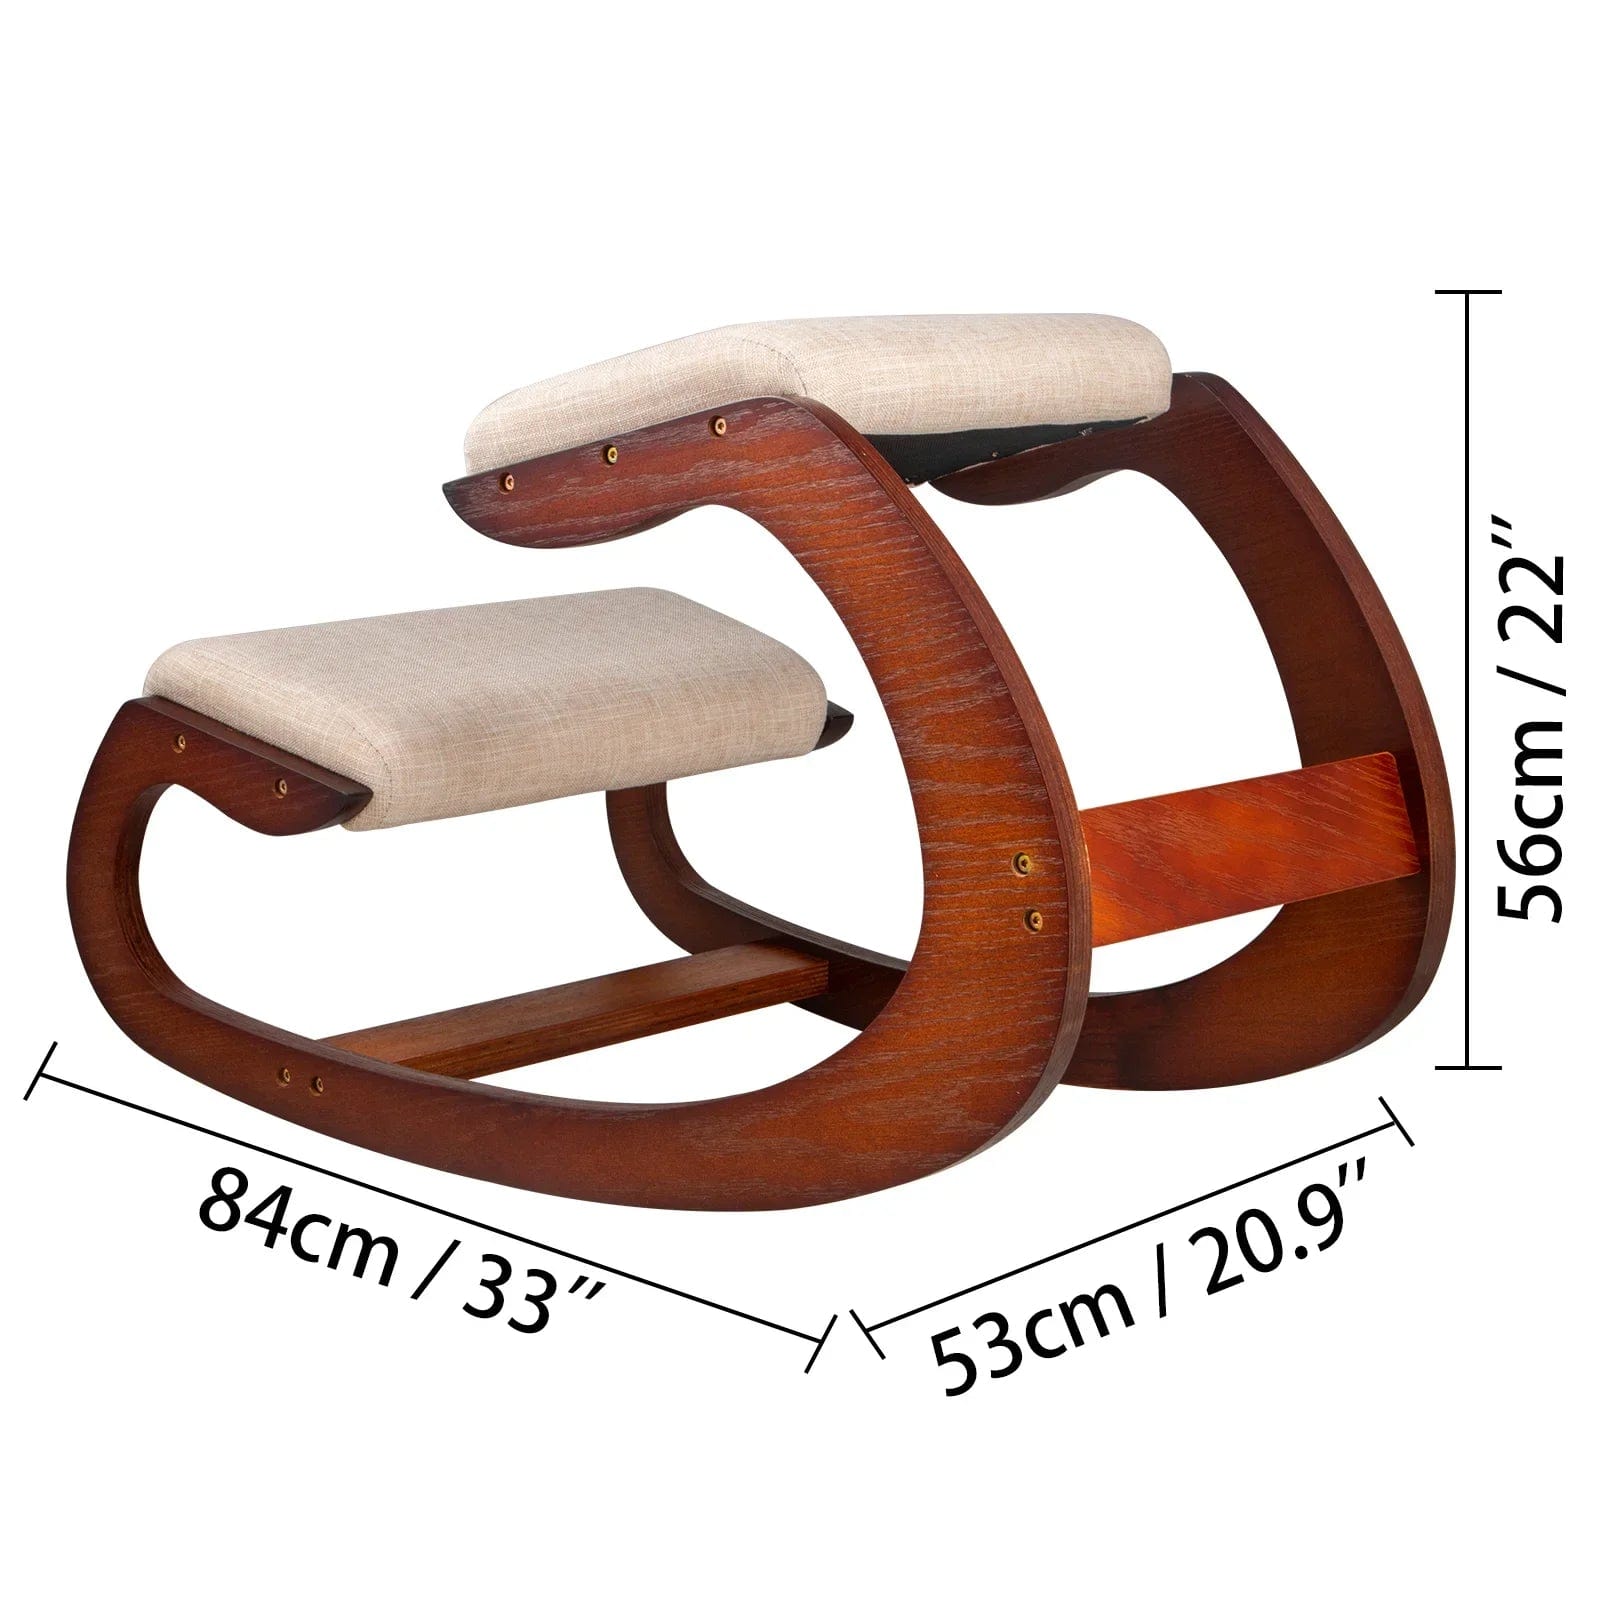 HomeBound Essentials CHINA / Hickory frame VEVOR Ergonomic Kneeling Cushion Chair Stool